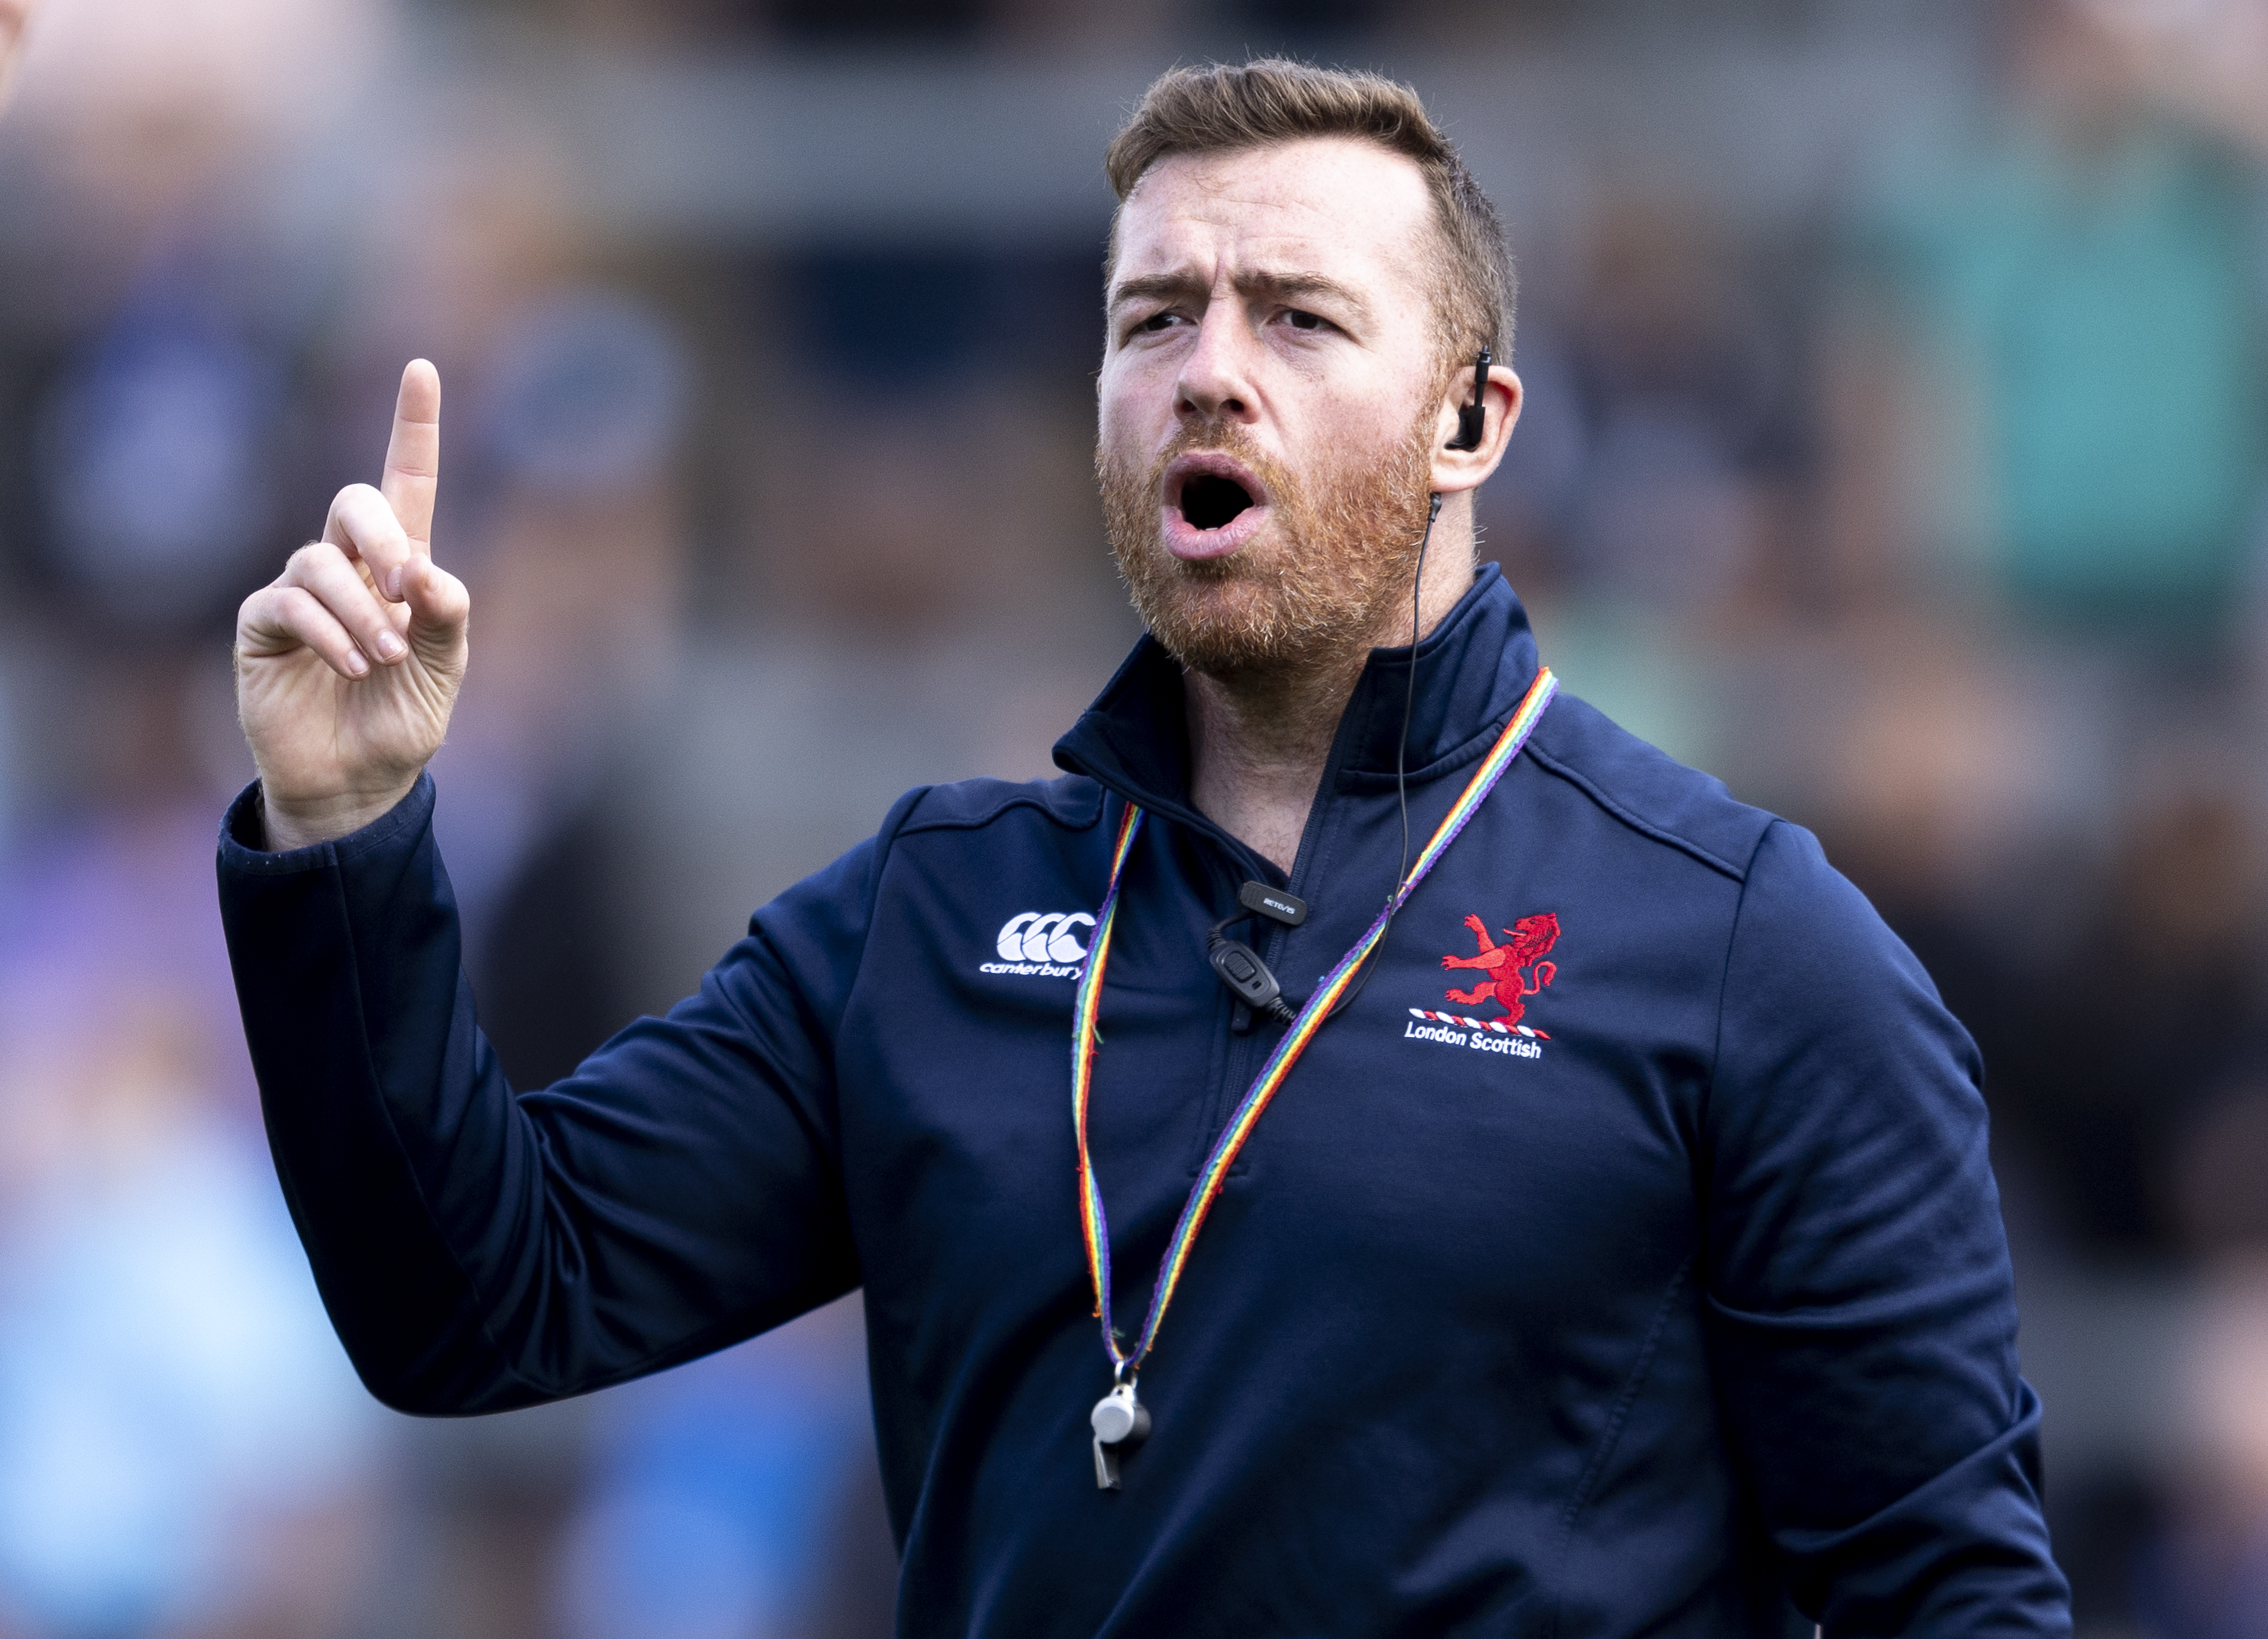 Gray engagiert sich immer noch als Cheftrainer bei London Scottish im Rugby